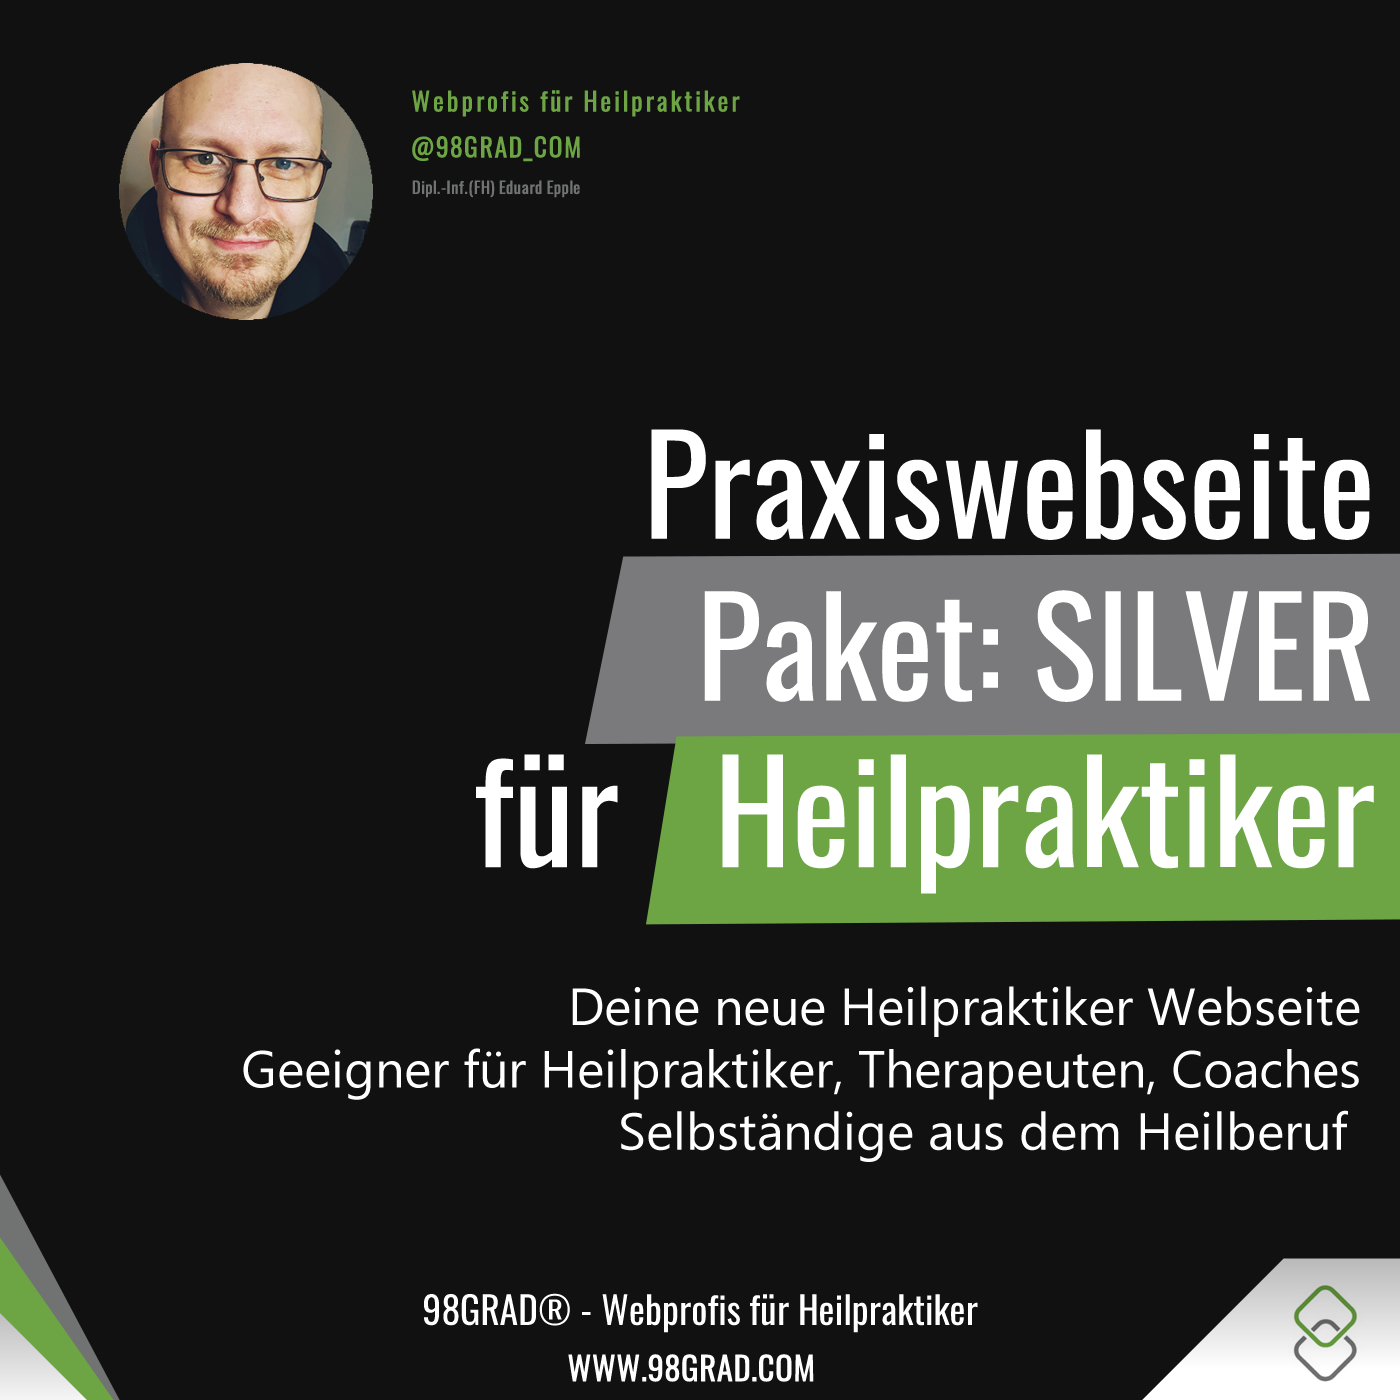 praxiswebseite-silver-heilpraktiker